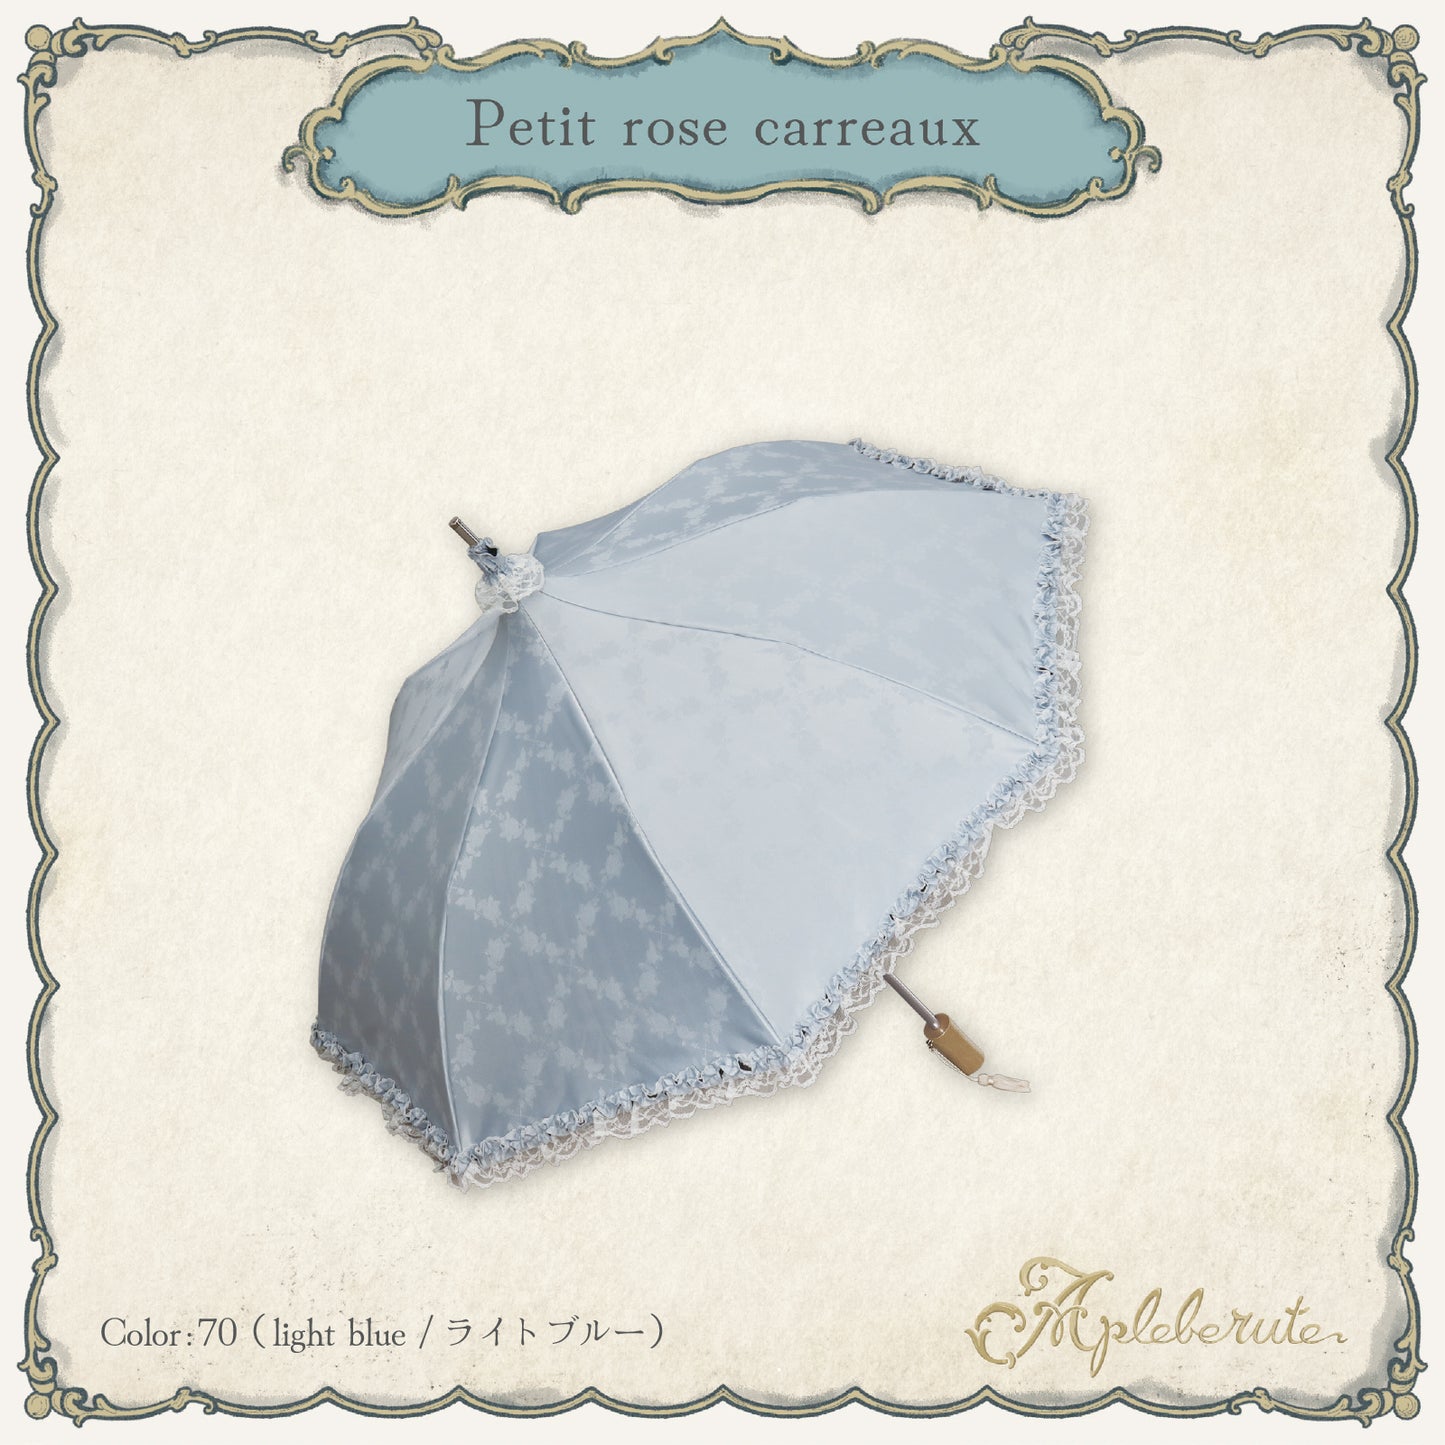 【New】petit-rose-carreaux (プチ ローズ カロー) - 1級遮光 折りたたみ日傘 晴雨兼用 UVカット フリル